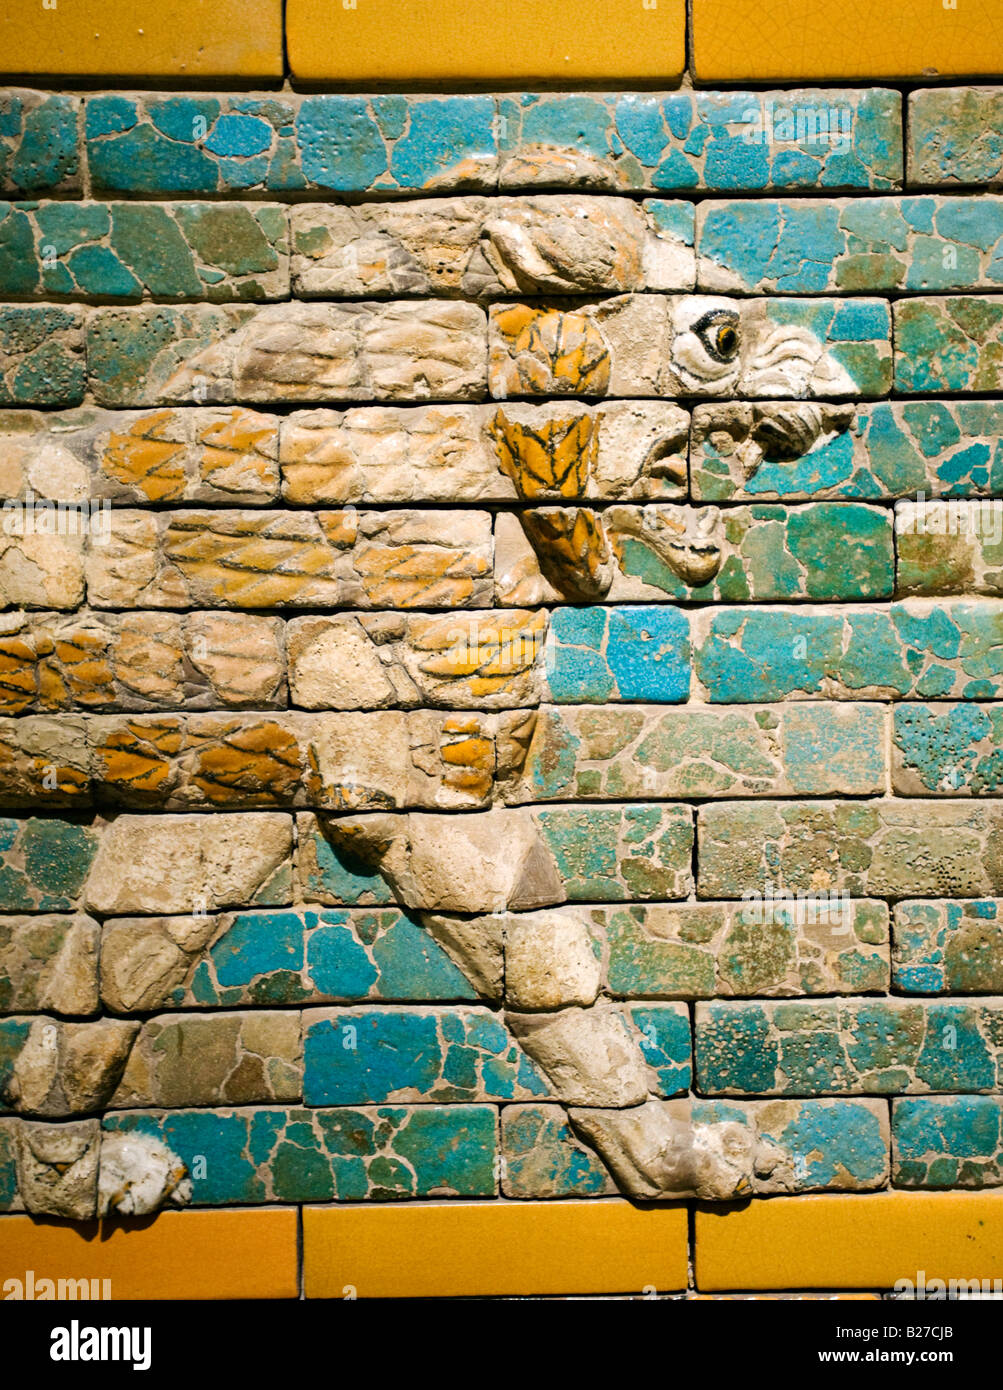 Détail de sol en céramique lion à Ishtar Gate dans Musée Pergamon de Berlin Allemagne Banque D'Images